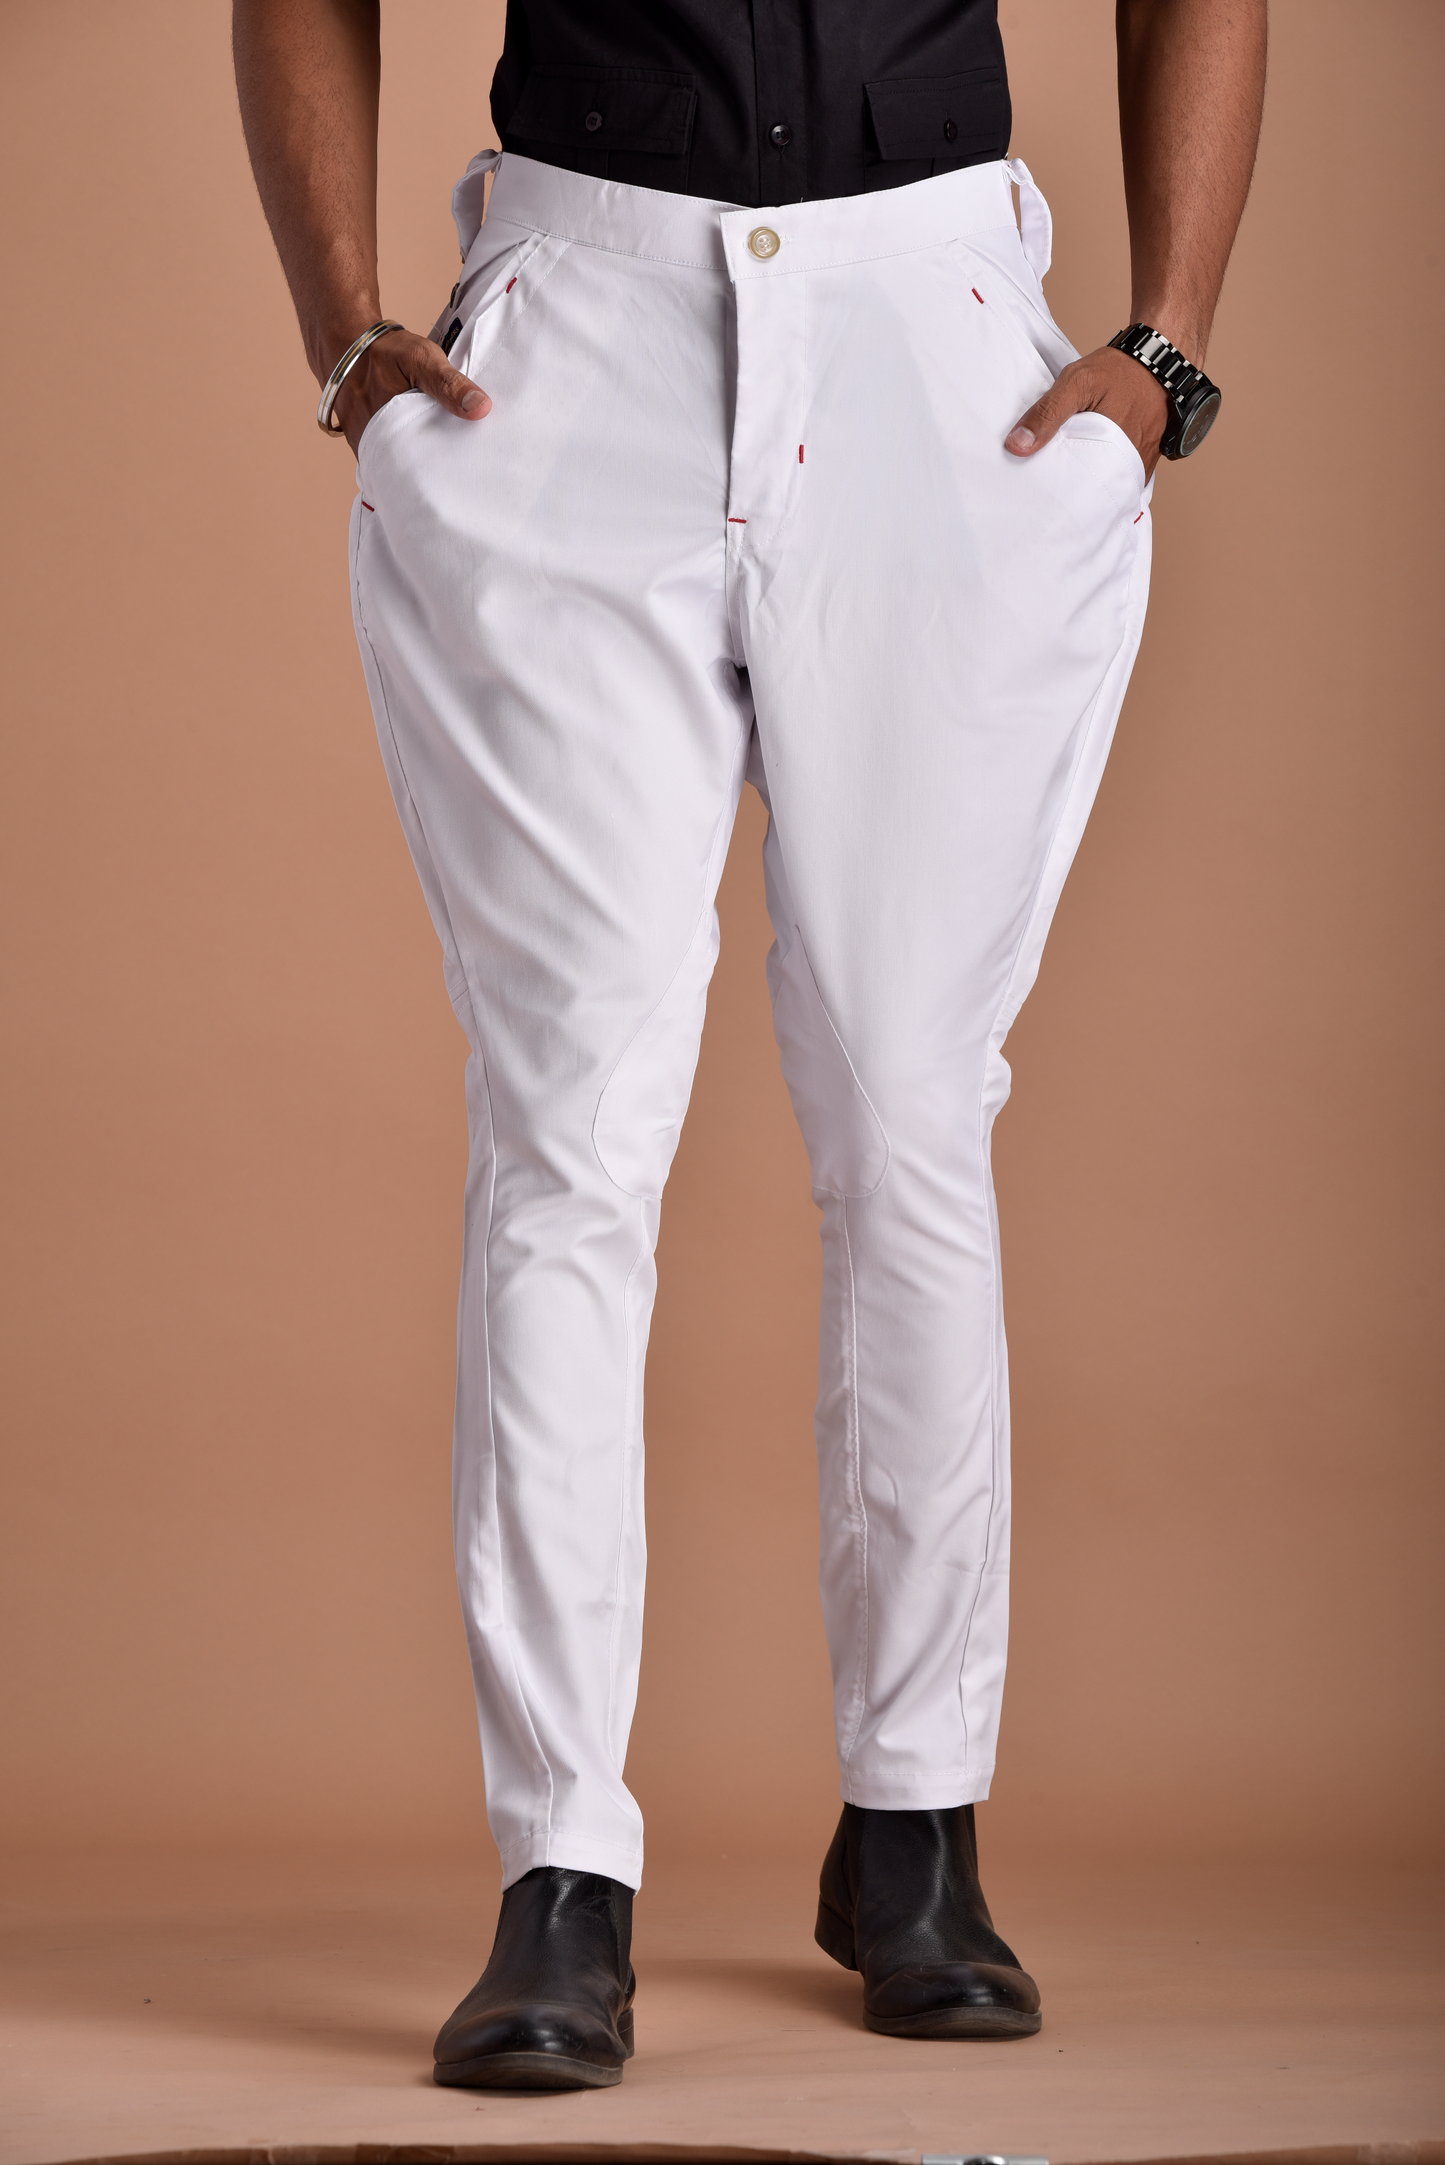 Classic and Stylish White Jodhpuri Breeches